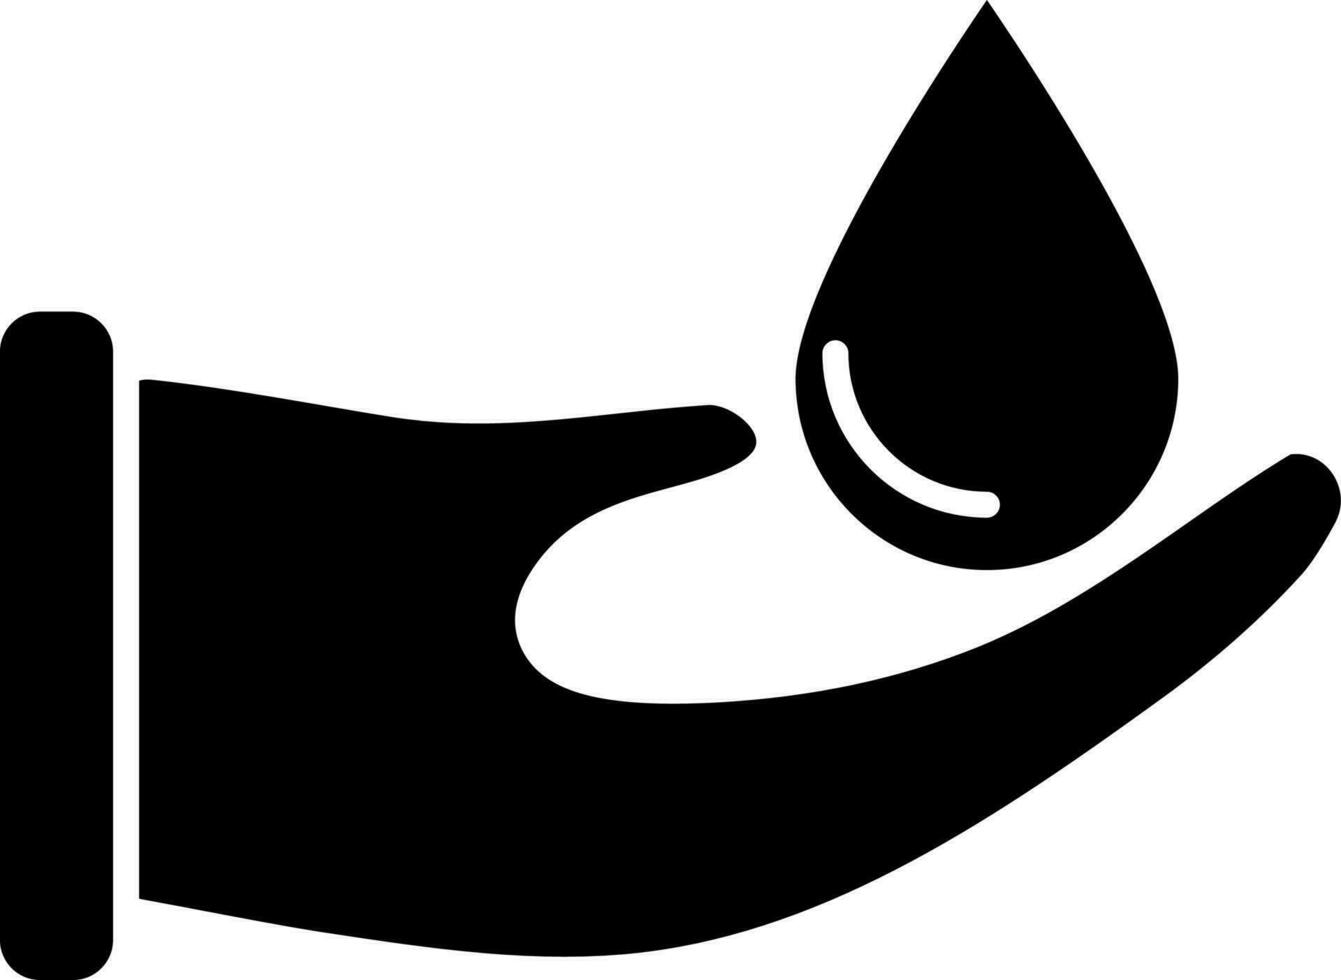 Spa massage, essential oil drop icon. vector